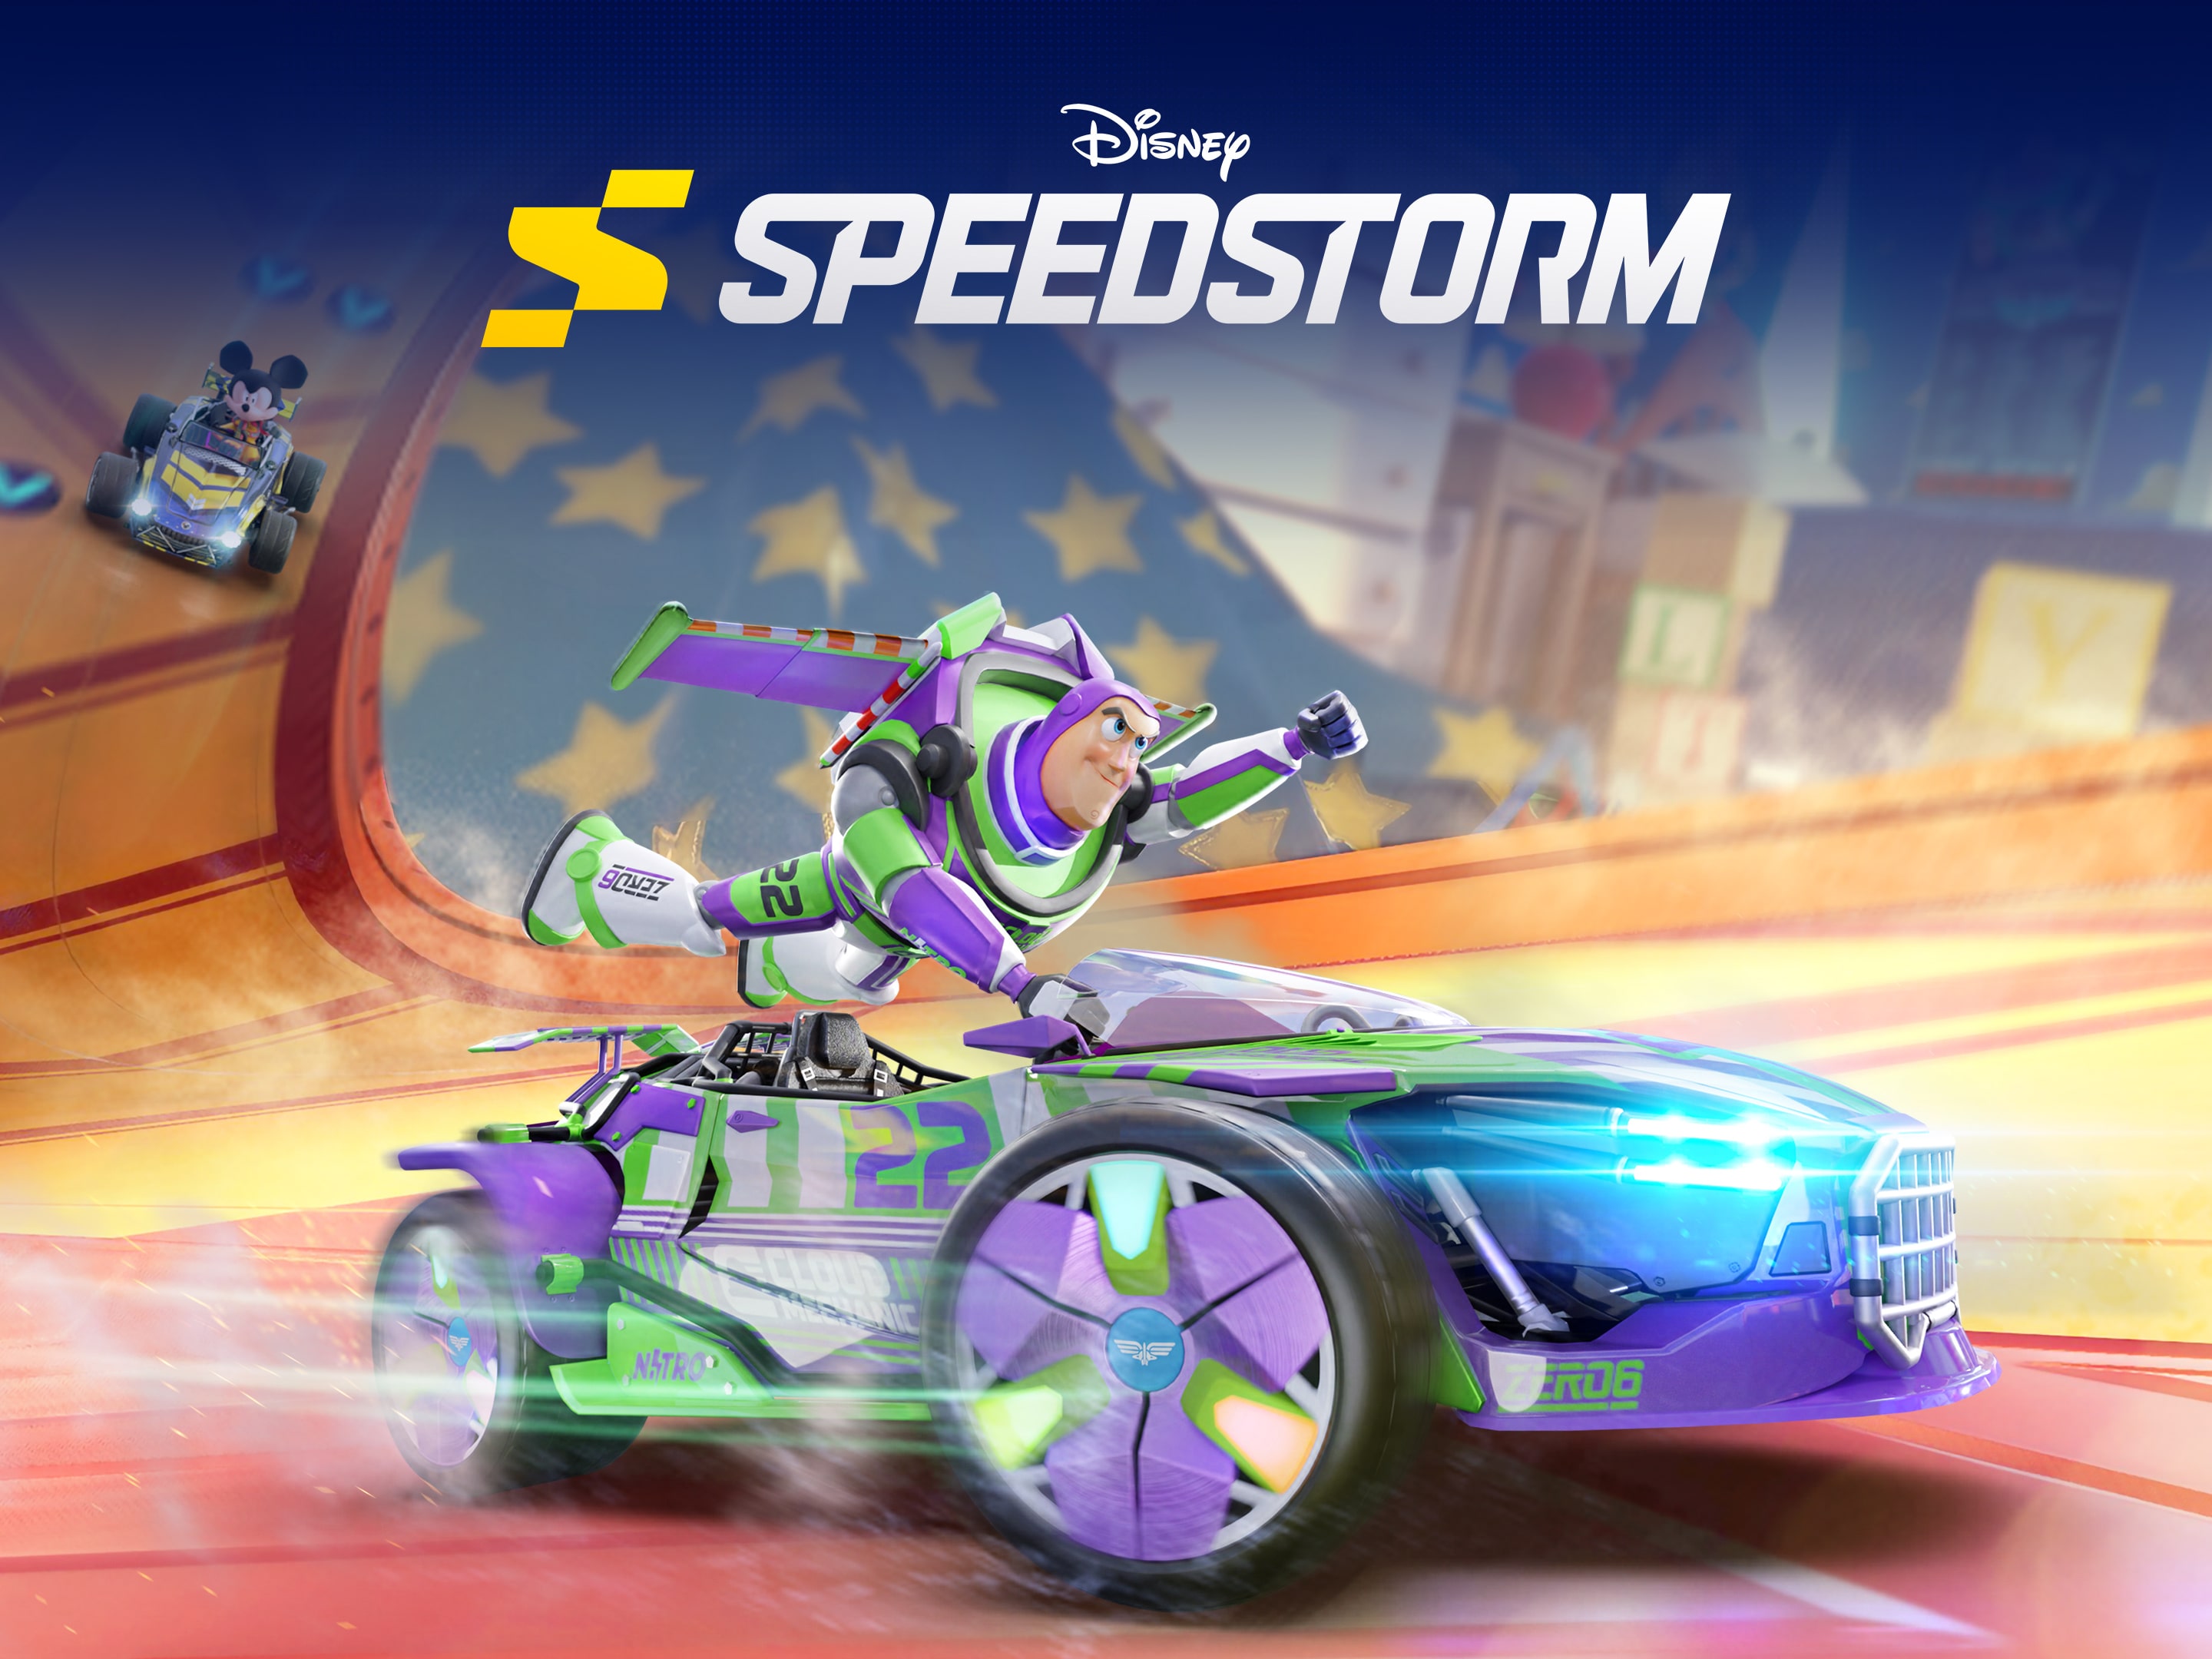 Jogo gratuito de corrida Disney Speedstorm é lançado na Steam